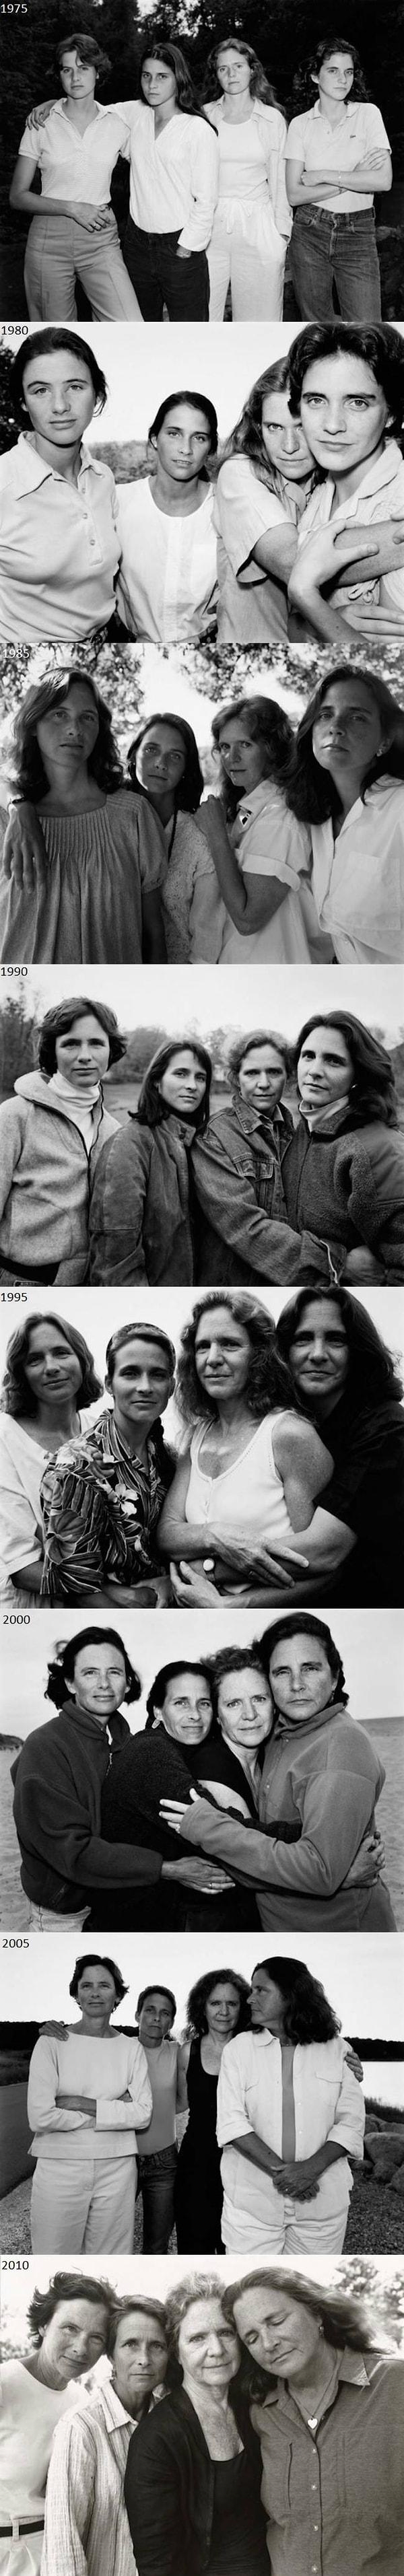 15. 1975'ten bu yana her beş yılda bir fotoğraf çektiren kız kardeşler.